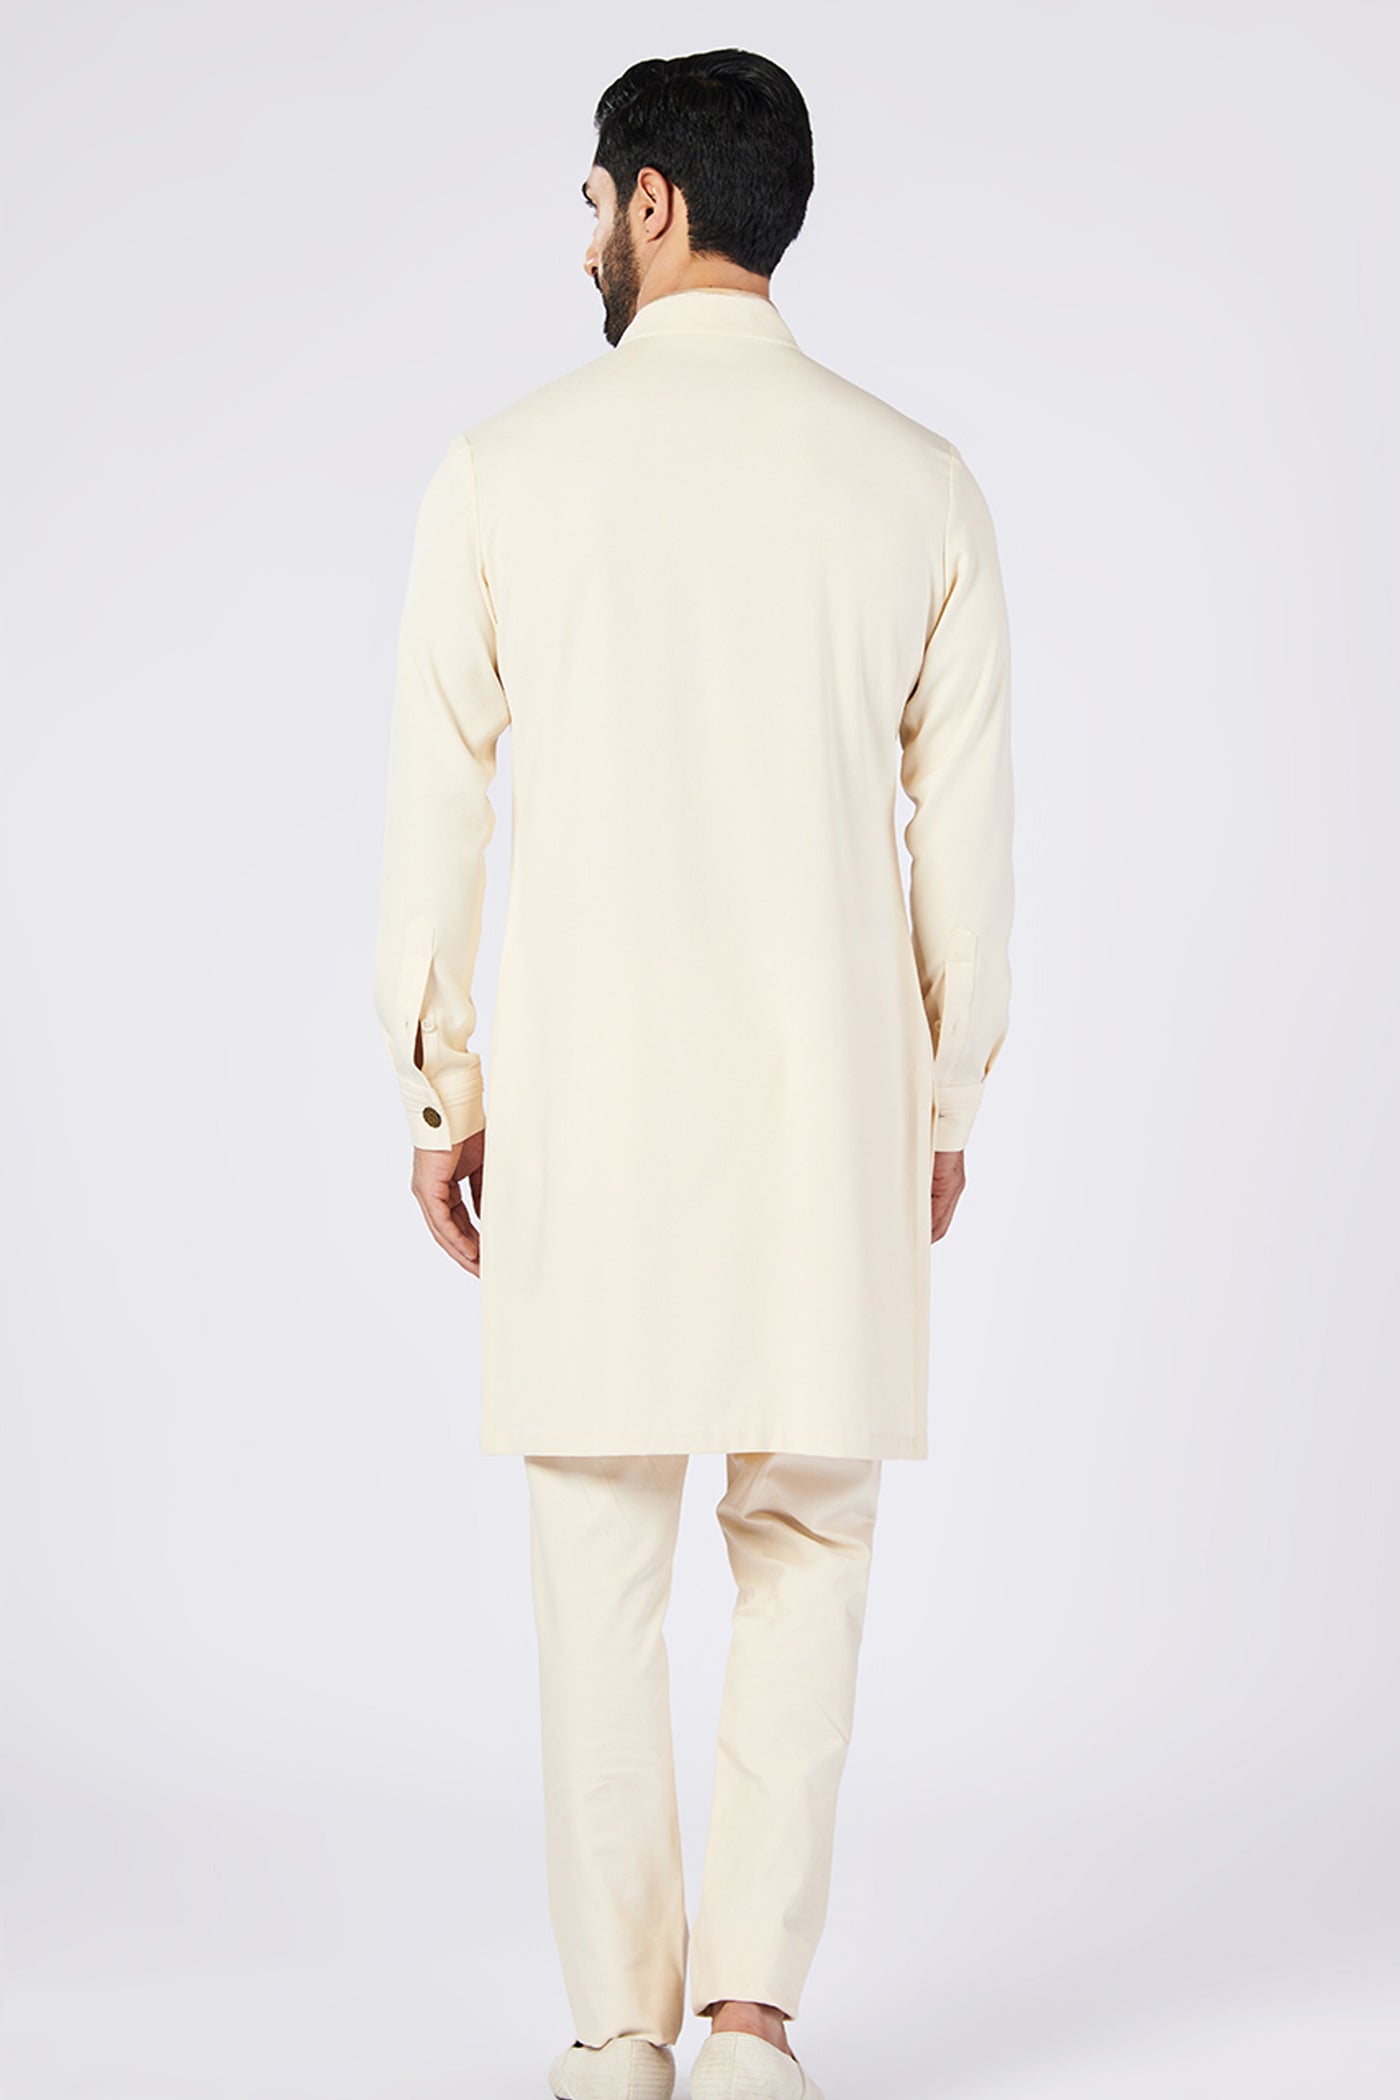 Shantanu & Nikhil Menswear Off white embroidered kurta indian designer wear online shopping melange singapore